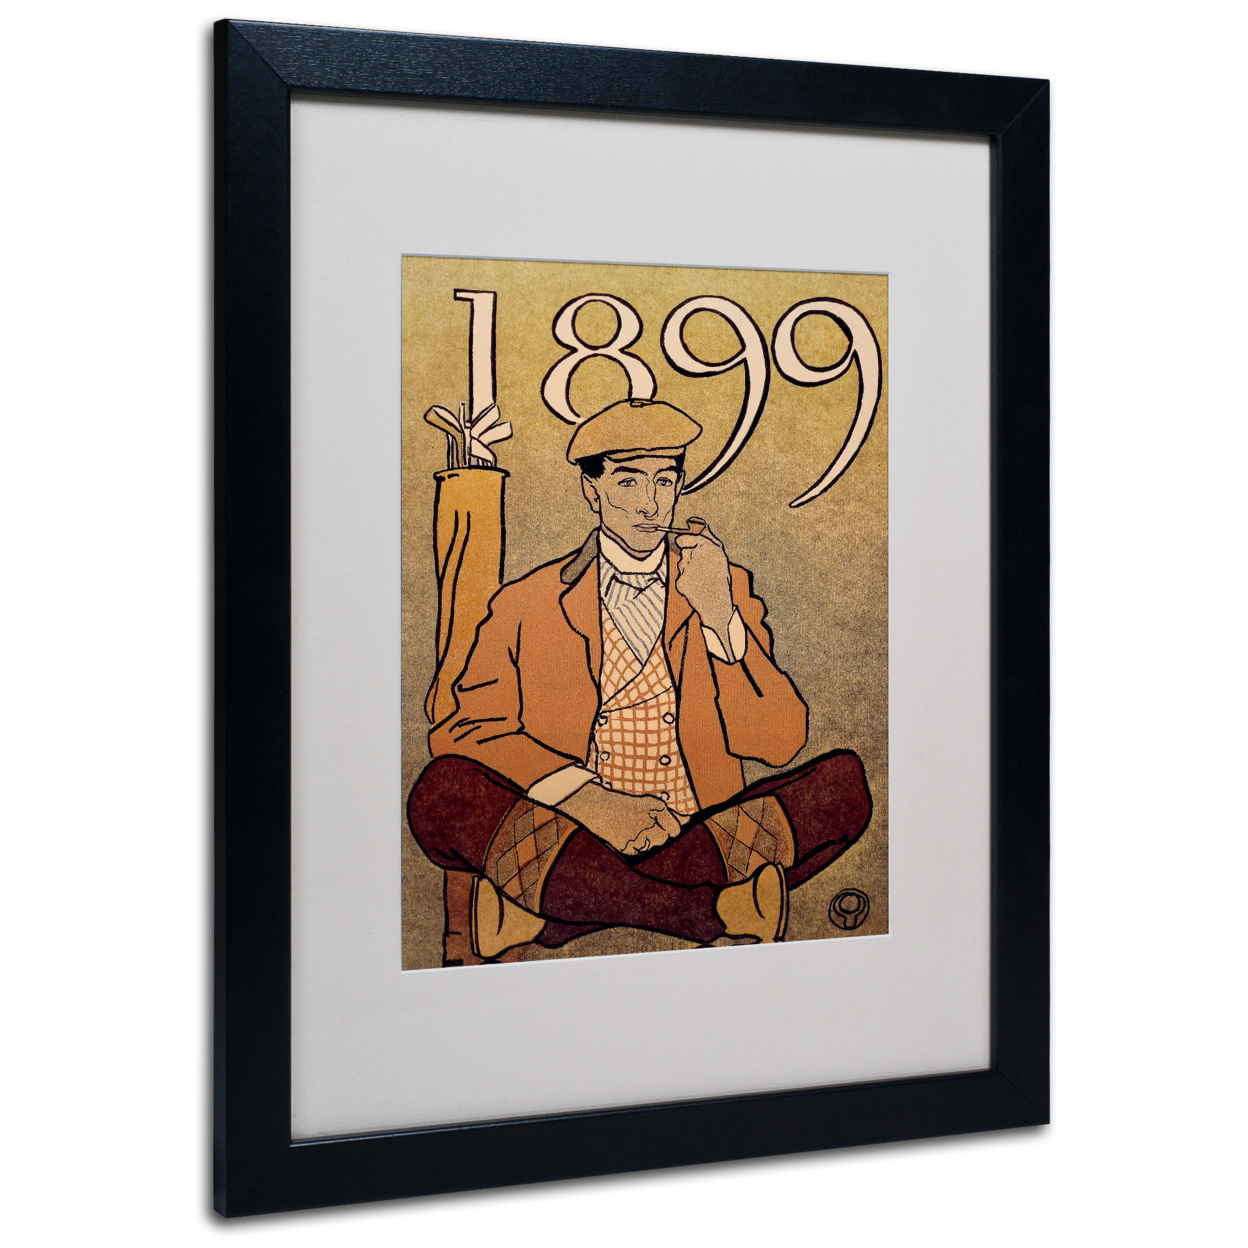 Edward Penfield 'Golf Calendar 1899' Black Wooden Framed Art 18 X 22 Inches